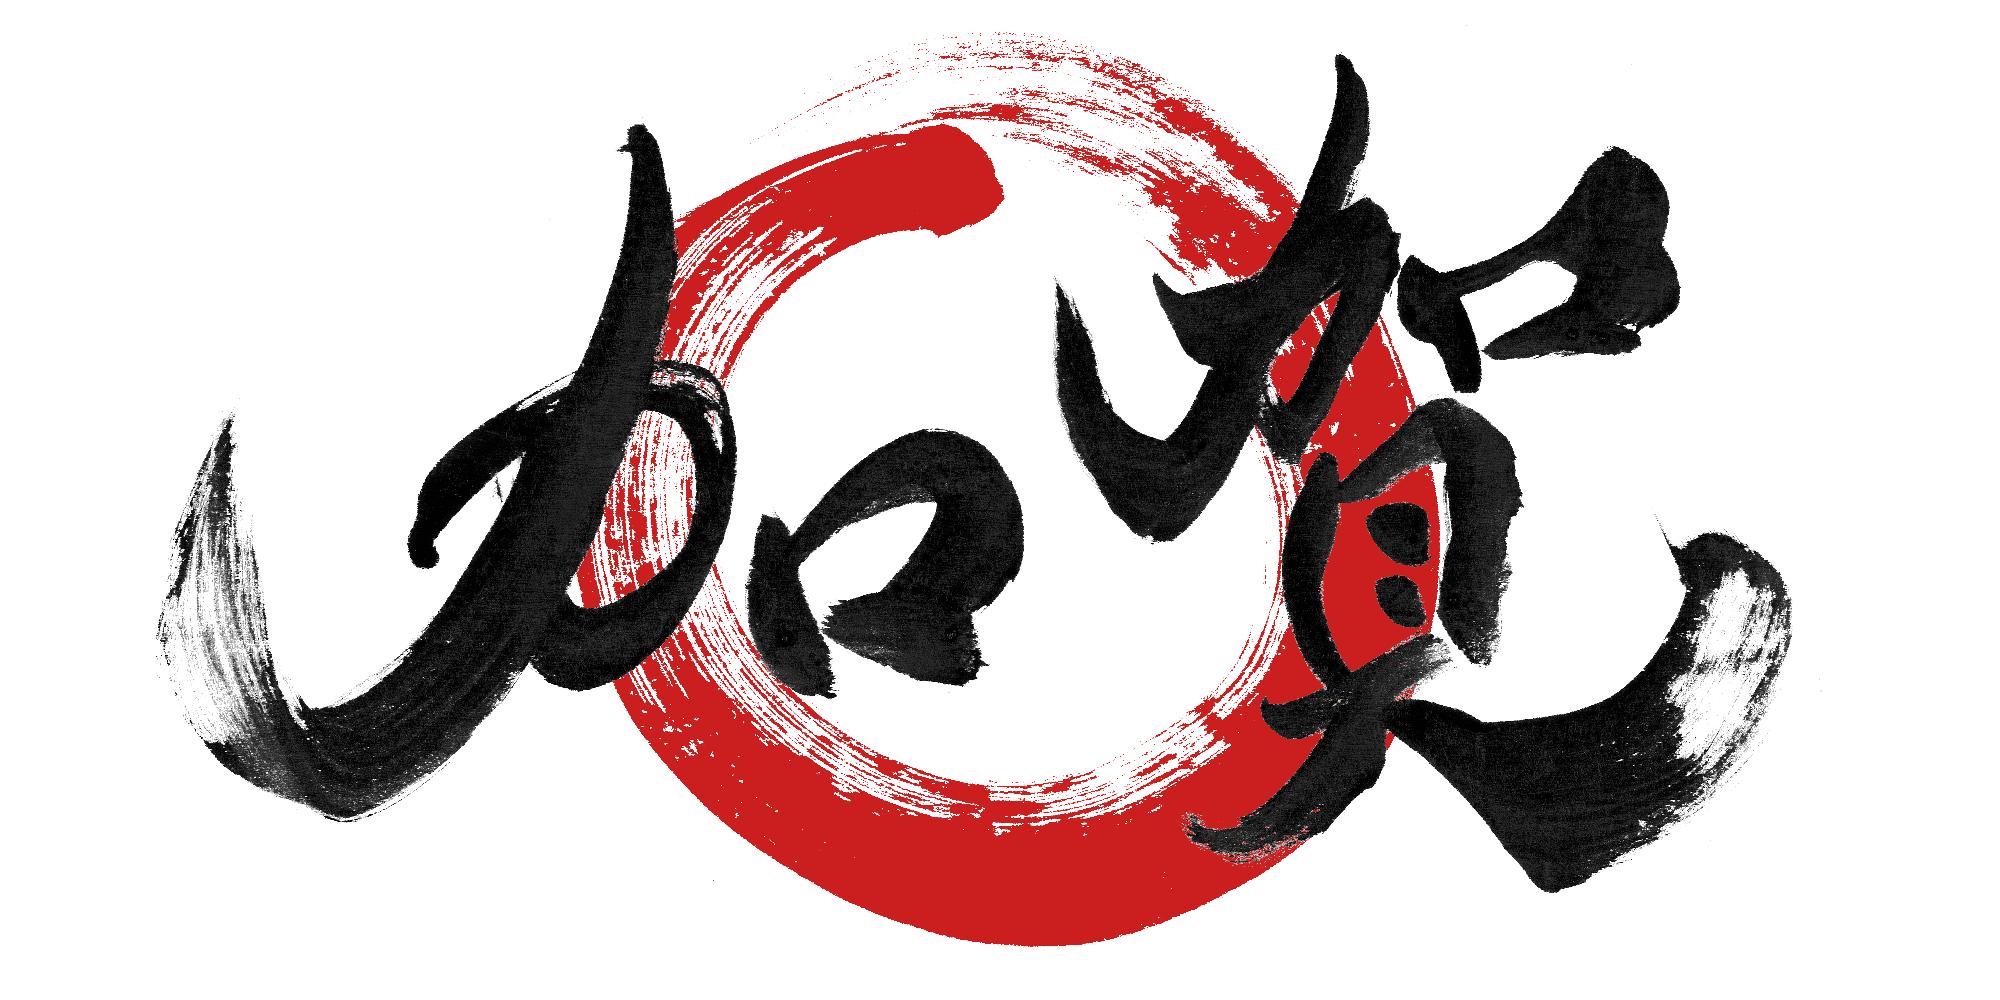 e加賀市民のロゴマーク。筆で描いたような字体で「加賀」と黒字で描かれており、その背景に筆で描いたような赤い丸が描かれている。